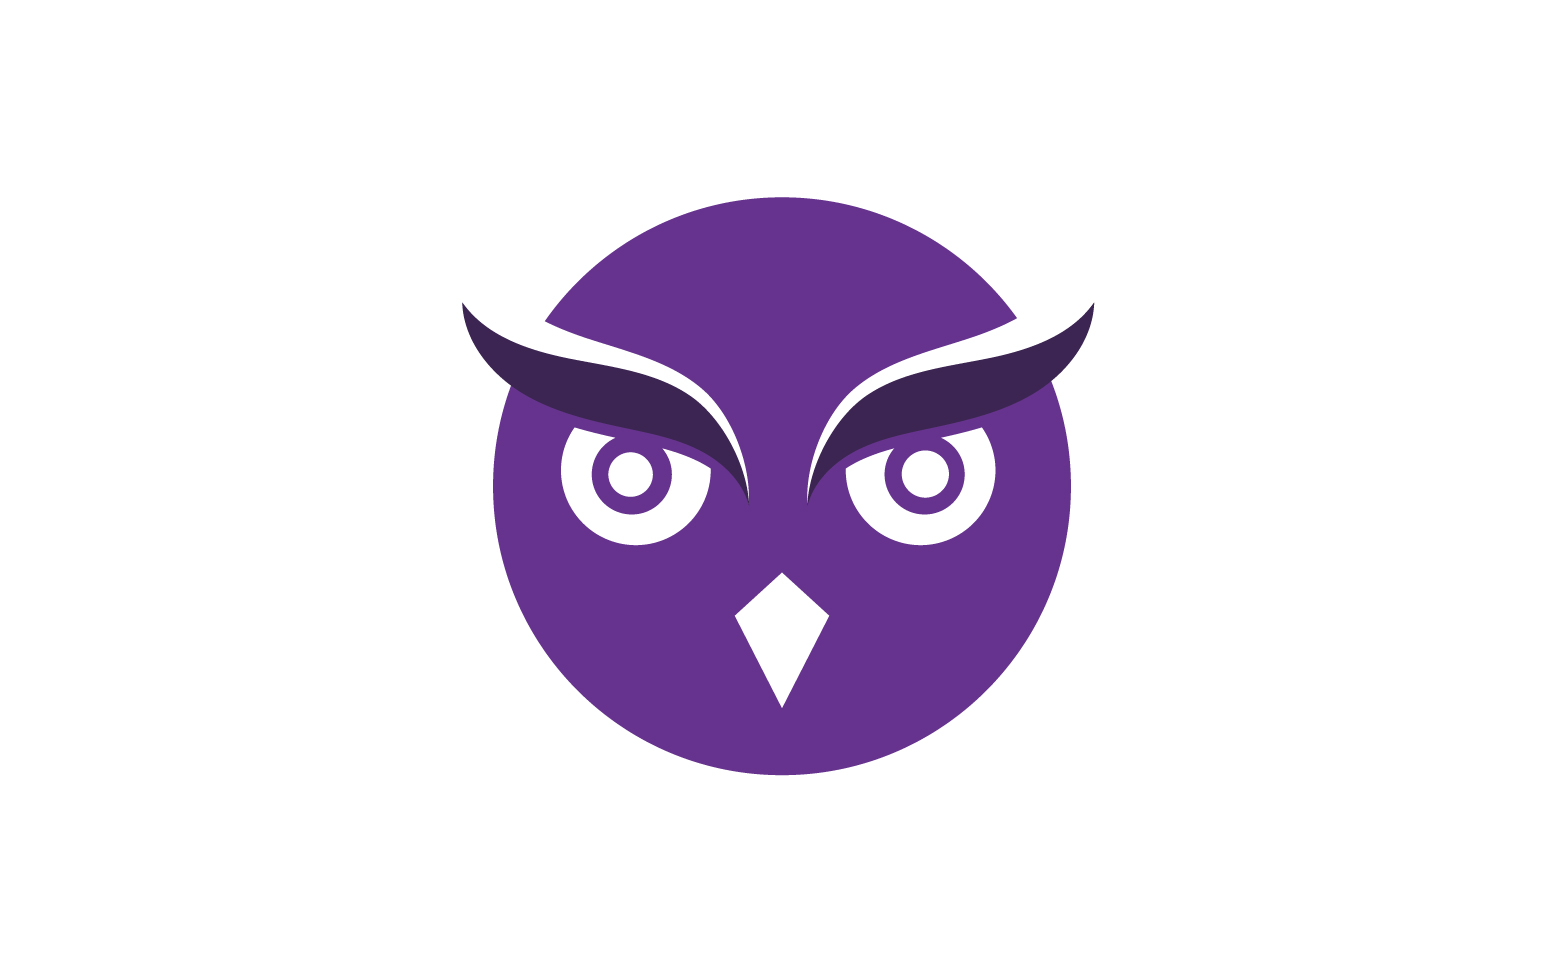 Owl head bird logo template vector v15